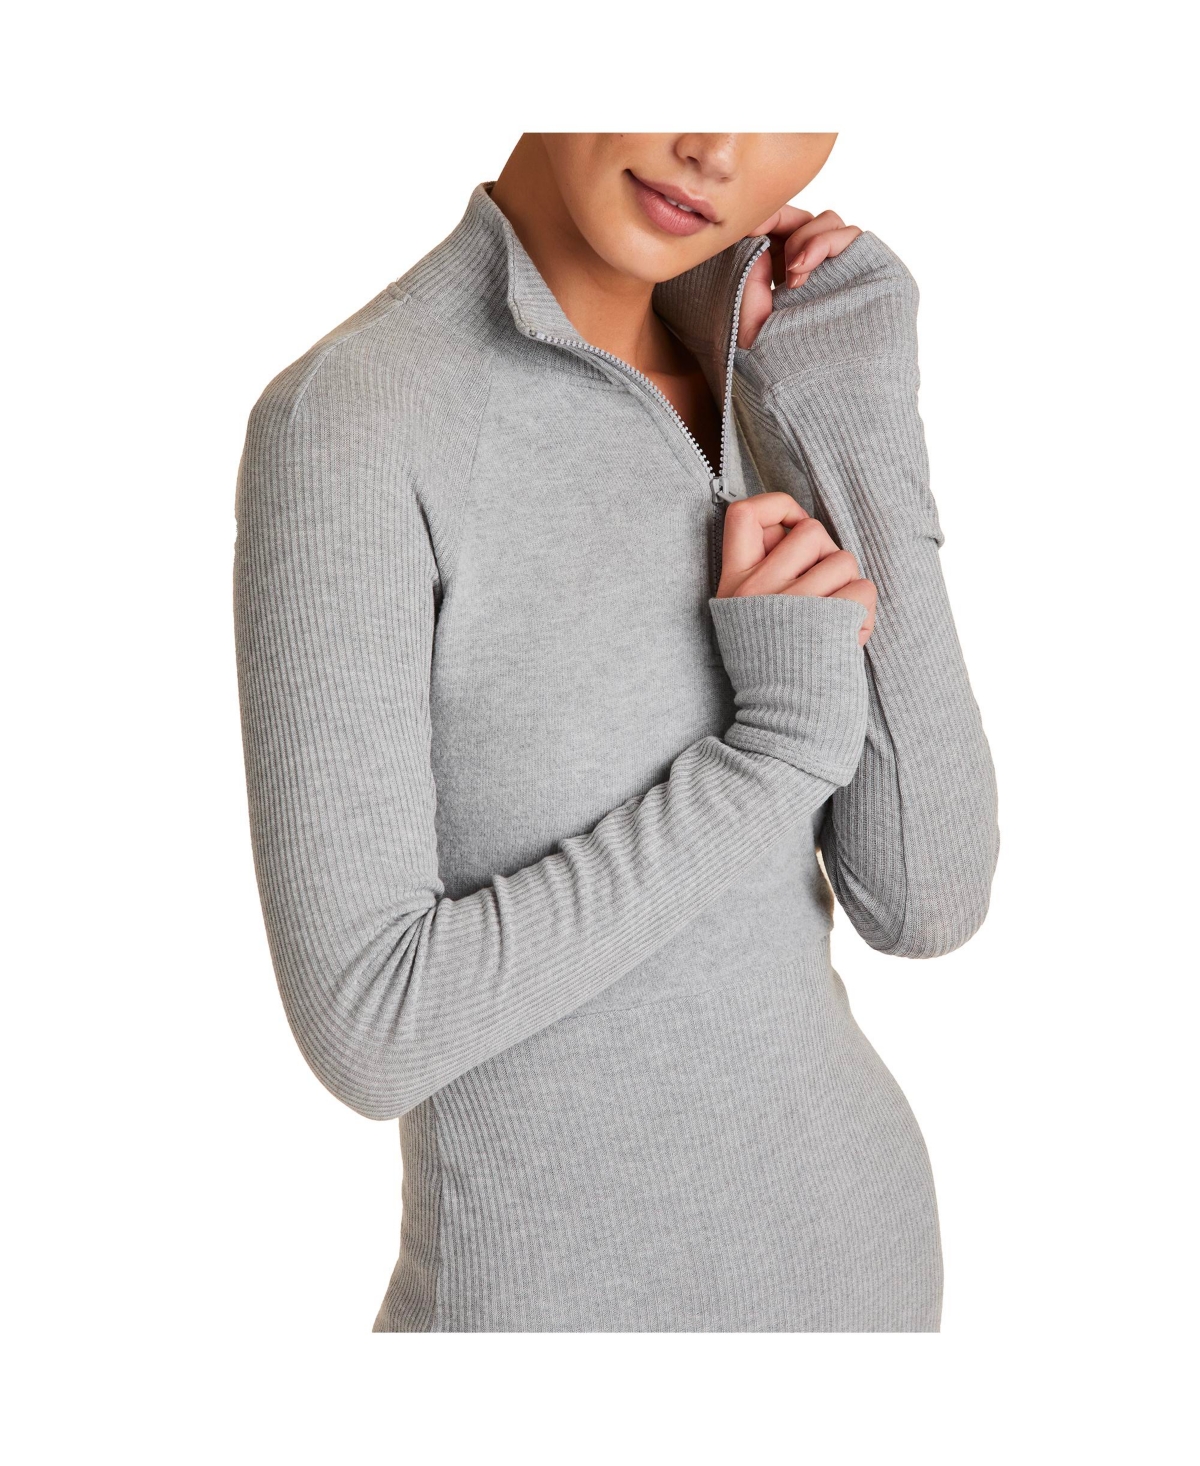 Adult Women Wander Quarter Zip Active Long Sleeve Sweater - Heather Grey